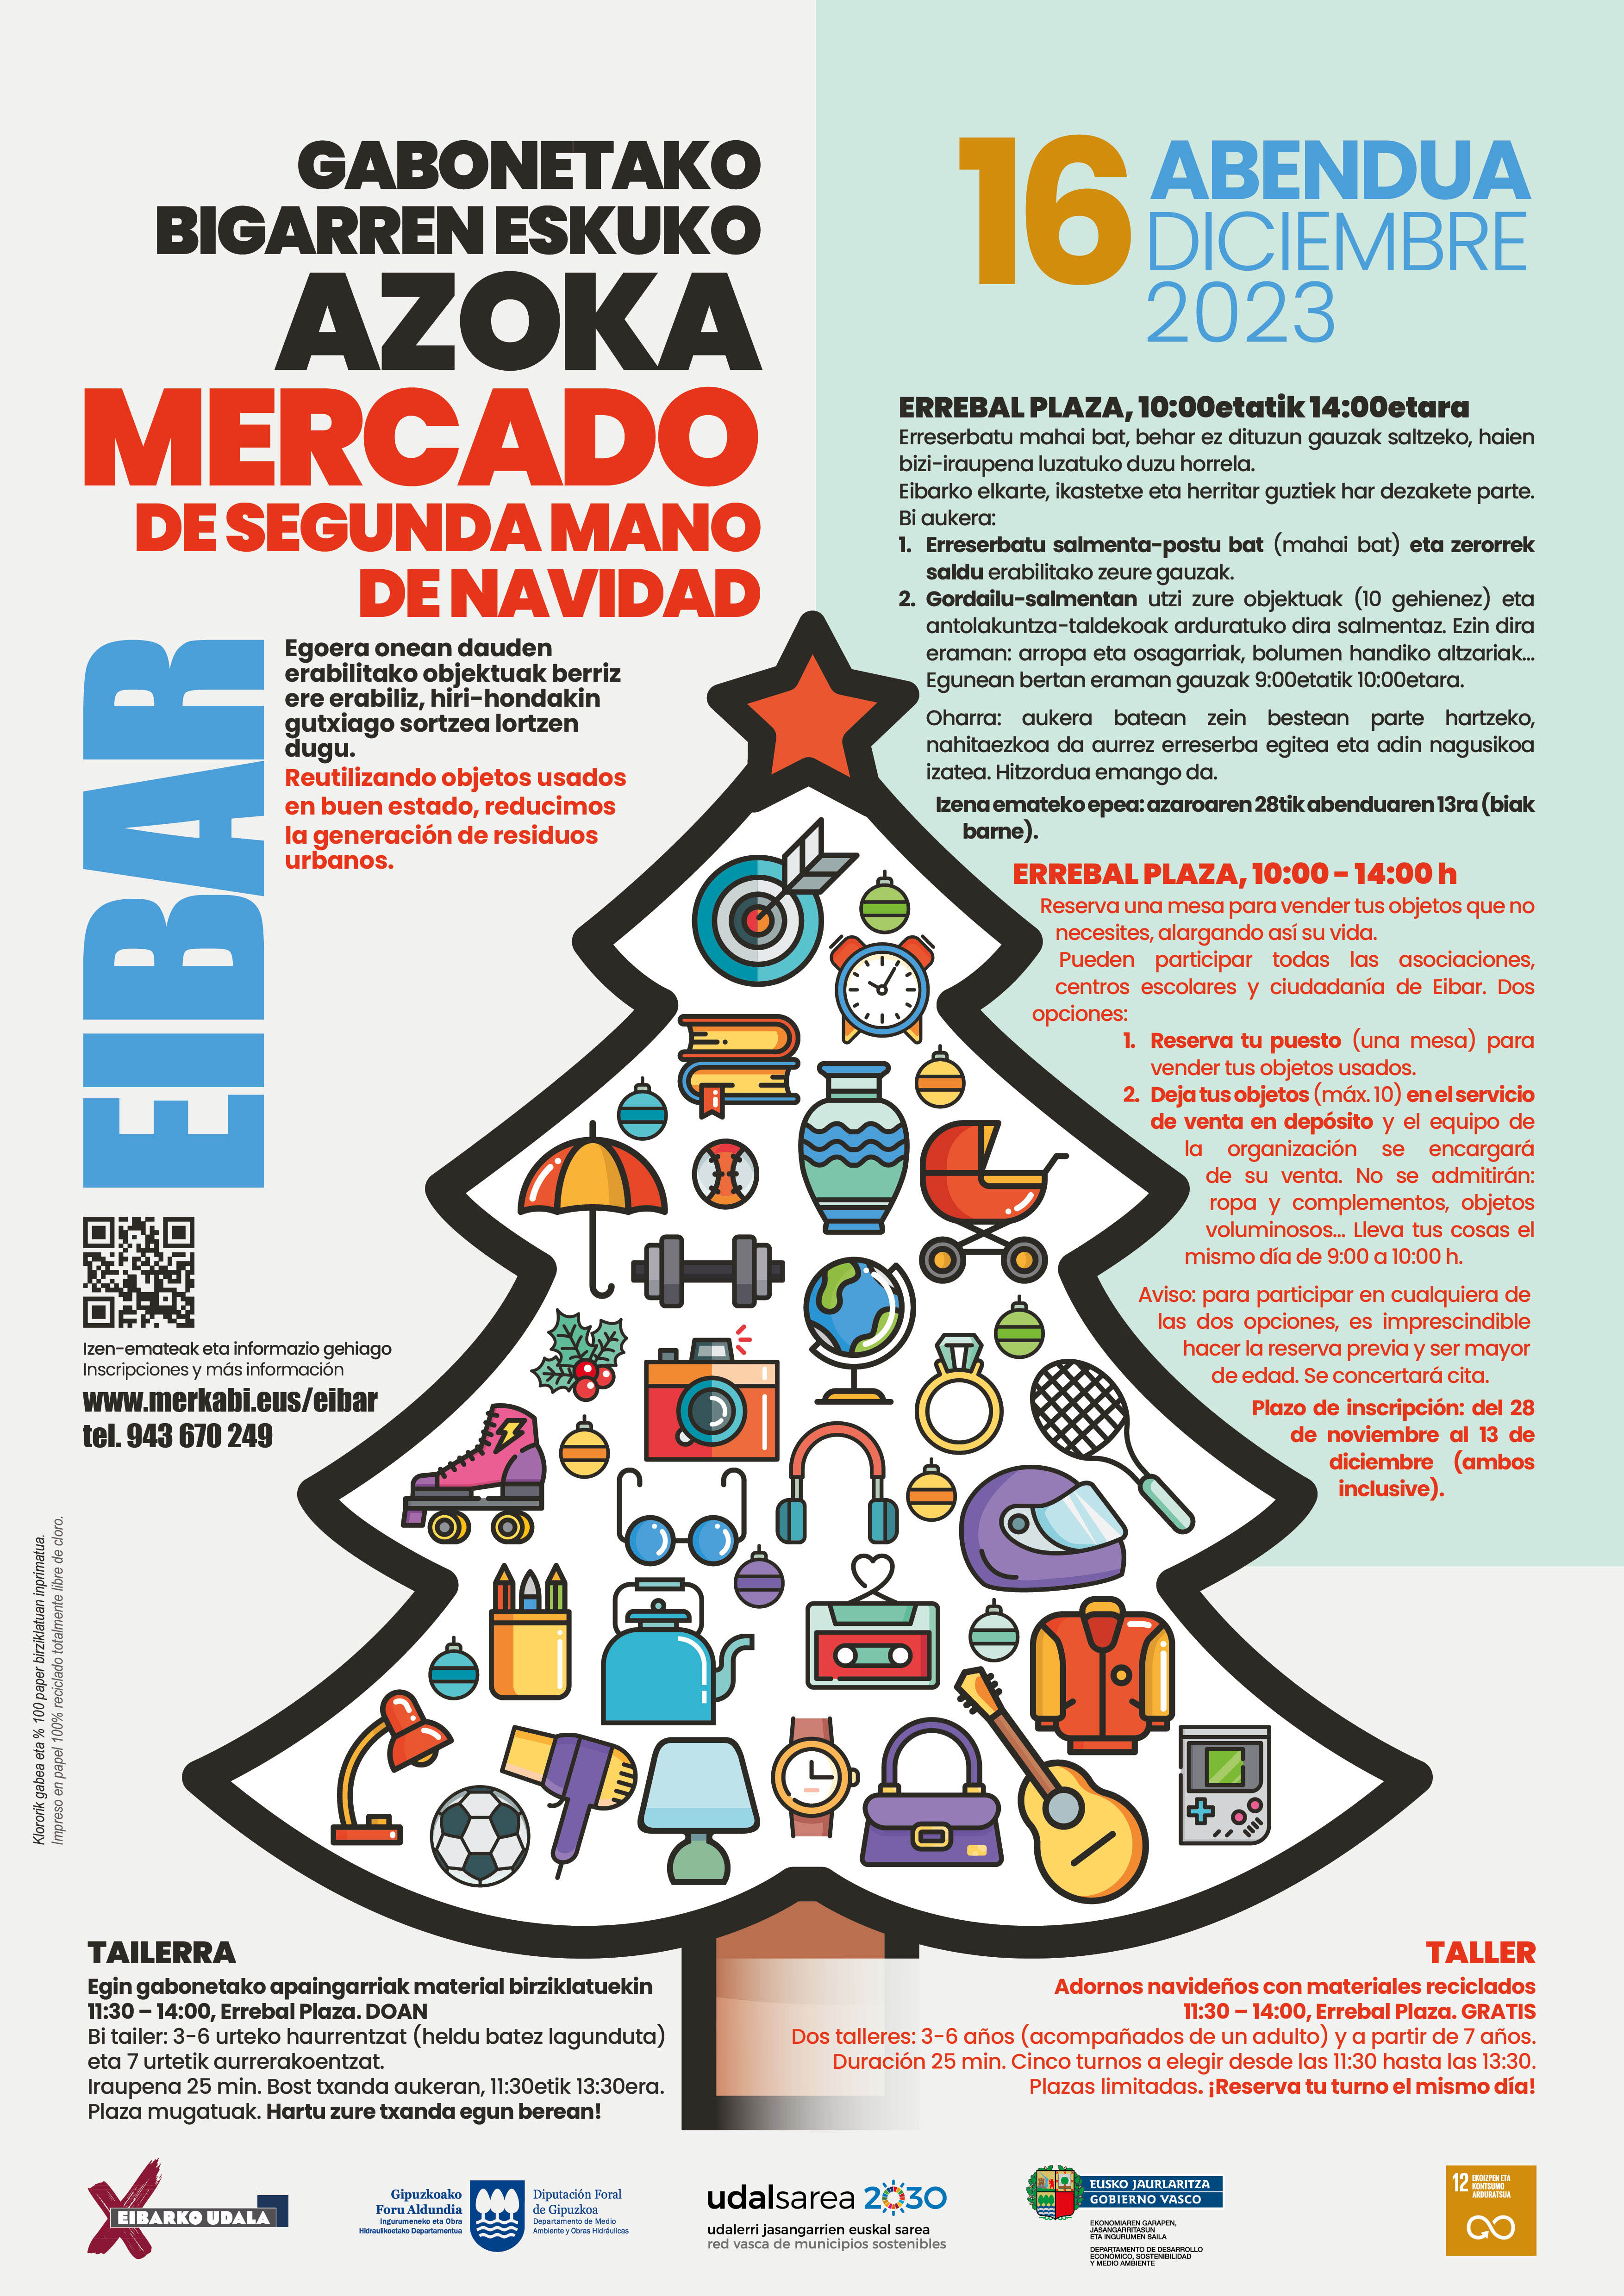 El Ayuntamiento de Eibar organiza una nueva edición del mercado de segunda mano de navidad para el 16 de diciembre